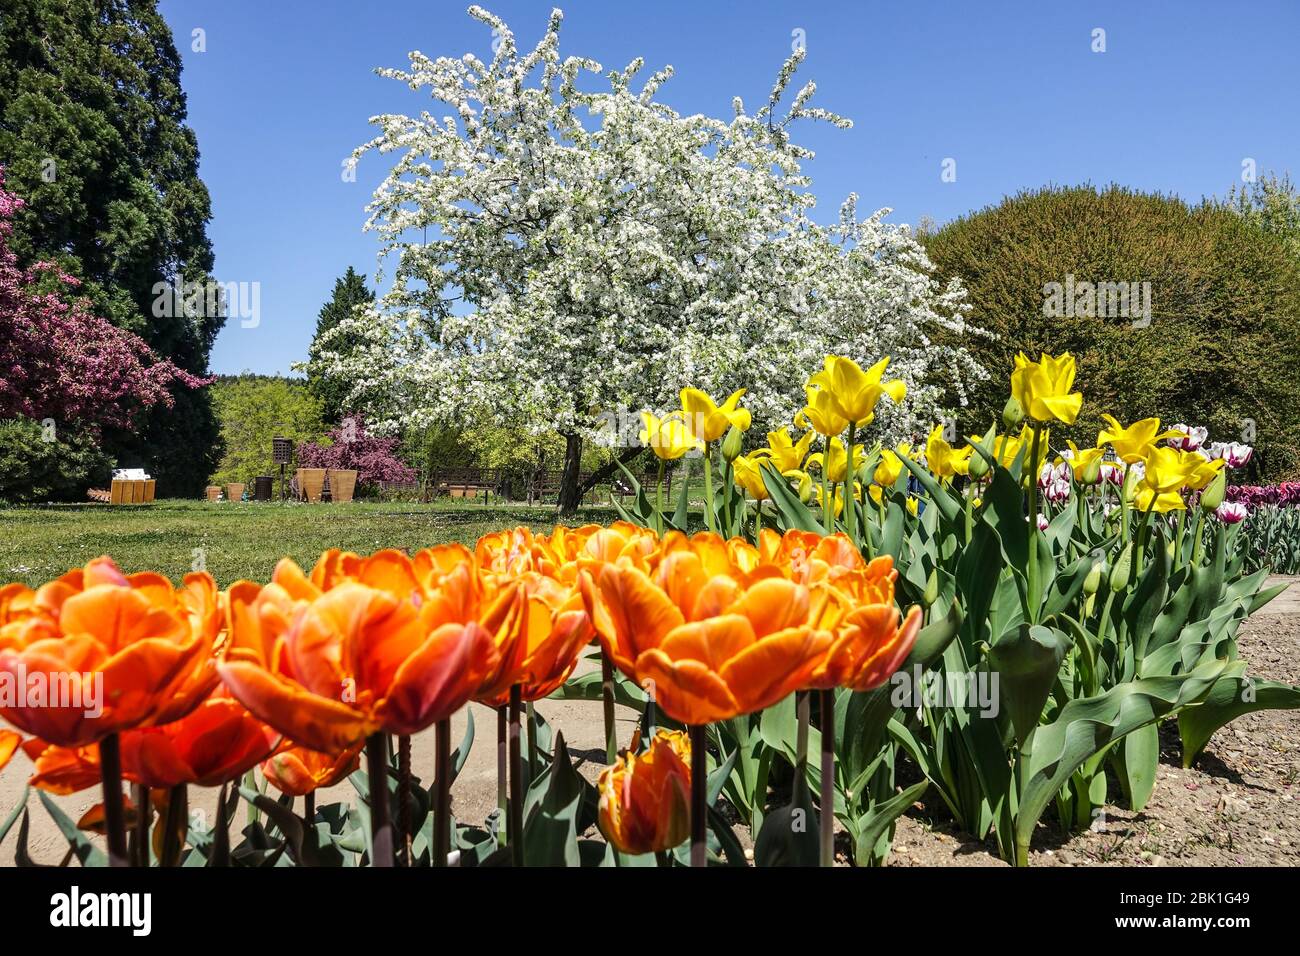 Prager Botanischer Garten Prager Tulpen im April Bett Troja Tschechische Republik Frühlingsblumen Grenzen botanická zahrada Stockfoto